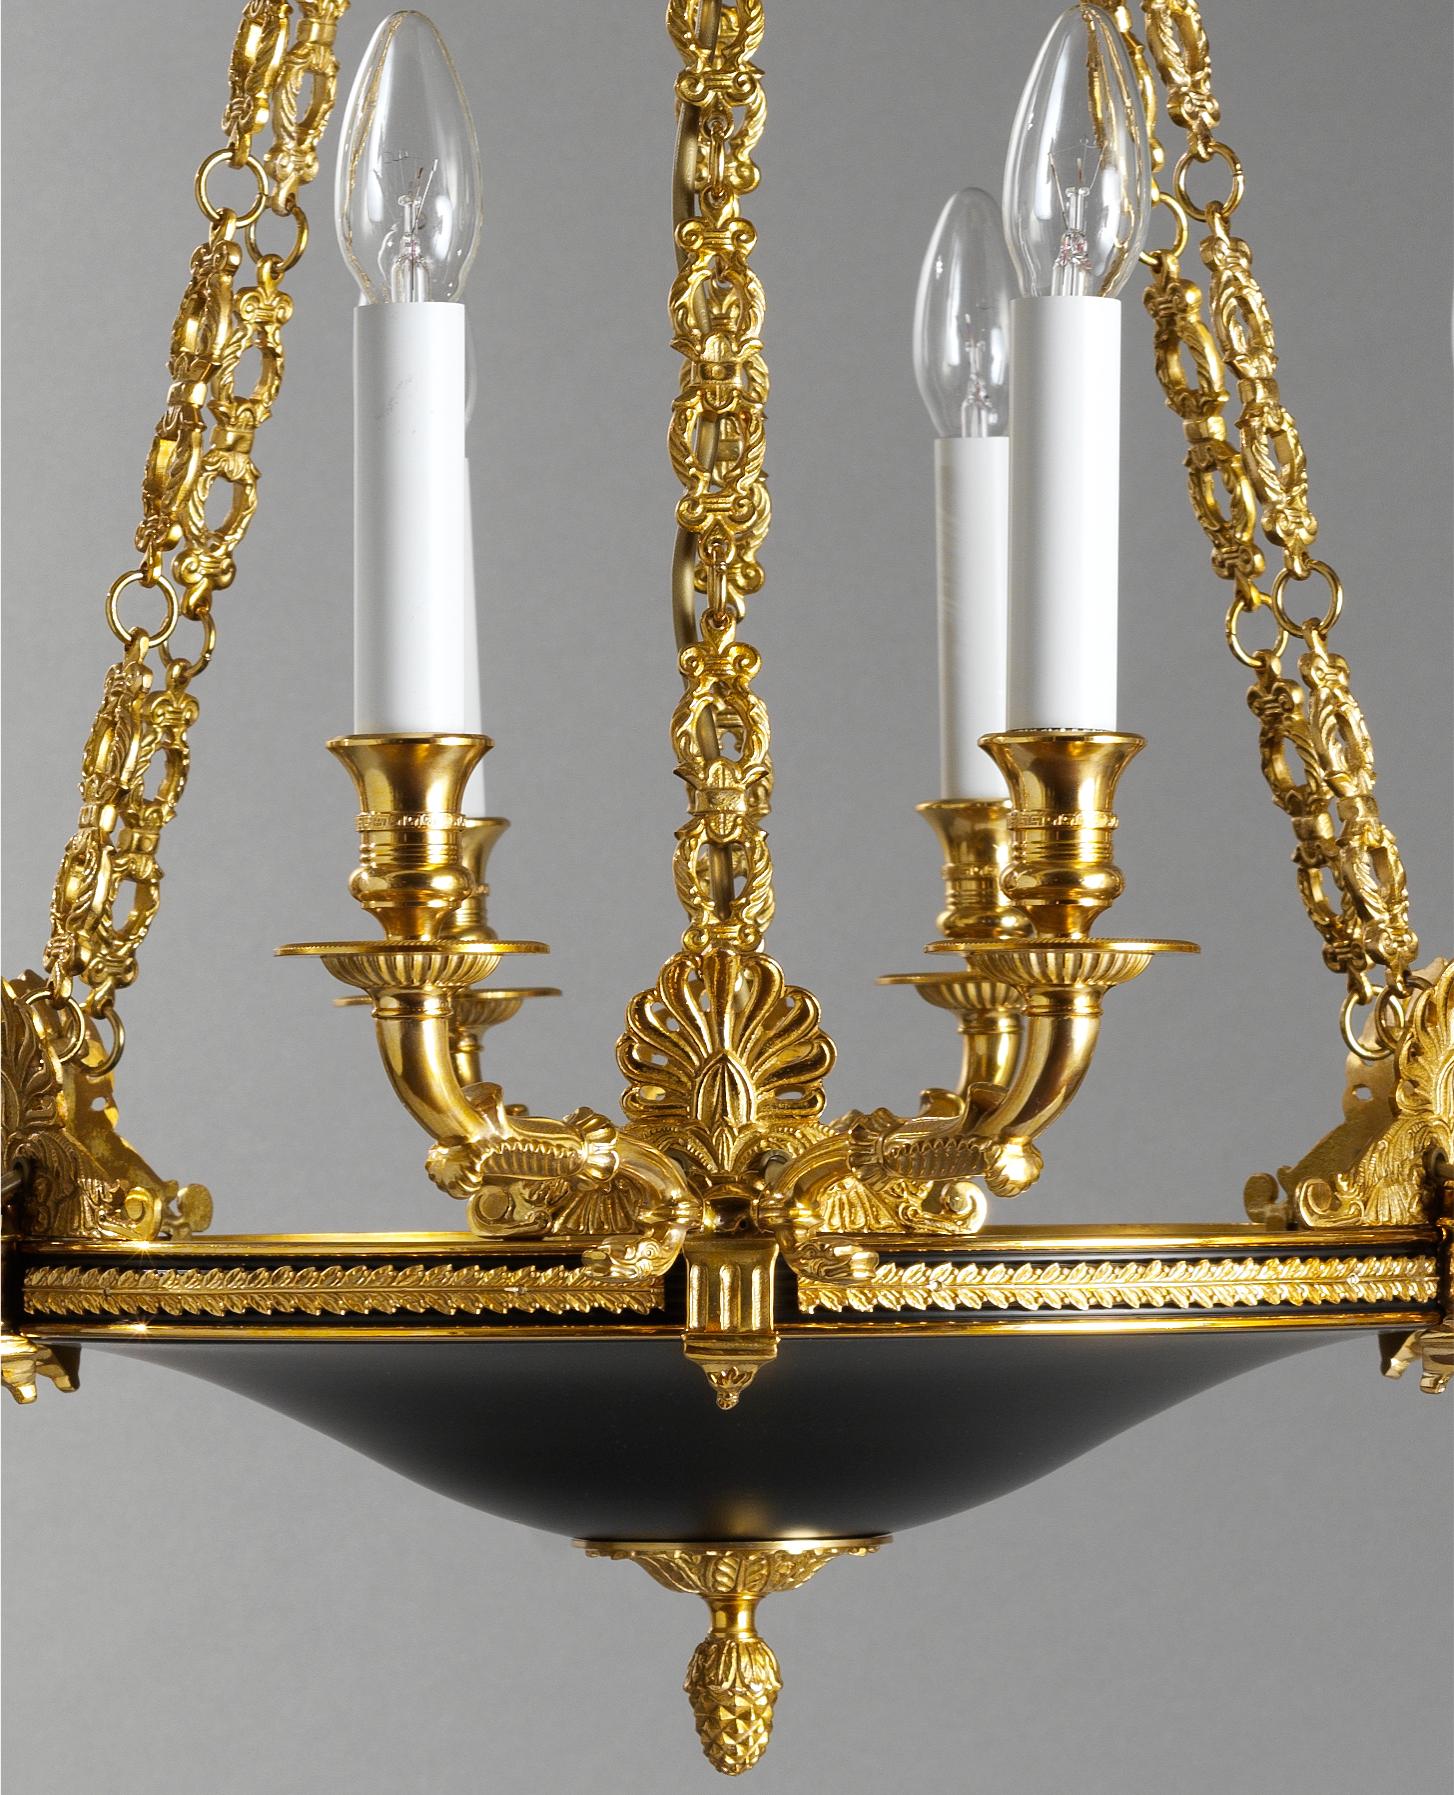 Le lustre de style Empire français en bronze doré et émaillé de Gherardo Degli Albizzi est doté de  douze lumières.
Ce lustre est caractérisé par une plaque classique agrémentée d'un acrotère en bronze doré et de bras de cygne.
En haut, il y a une